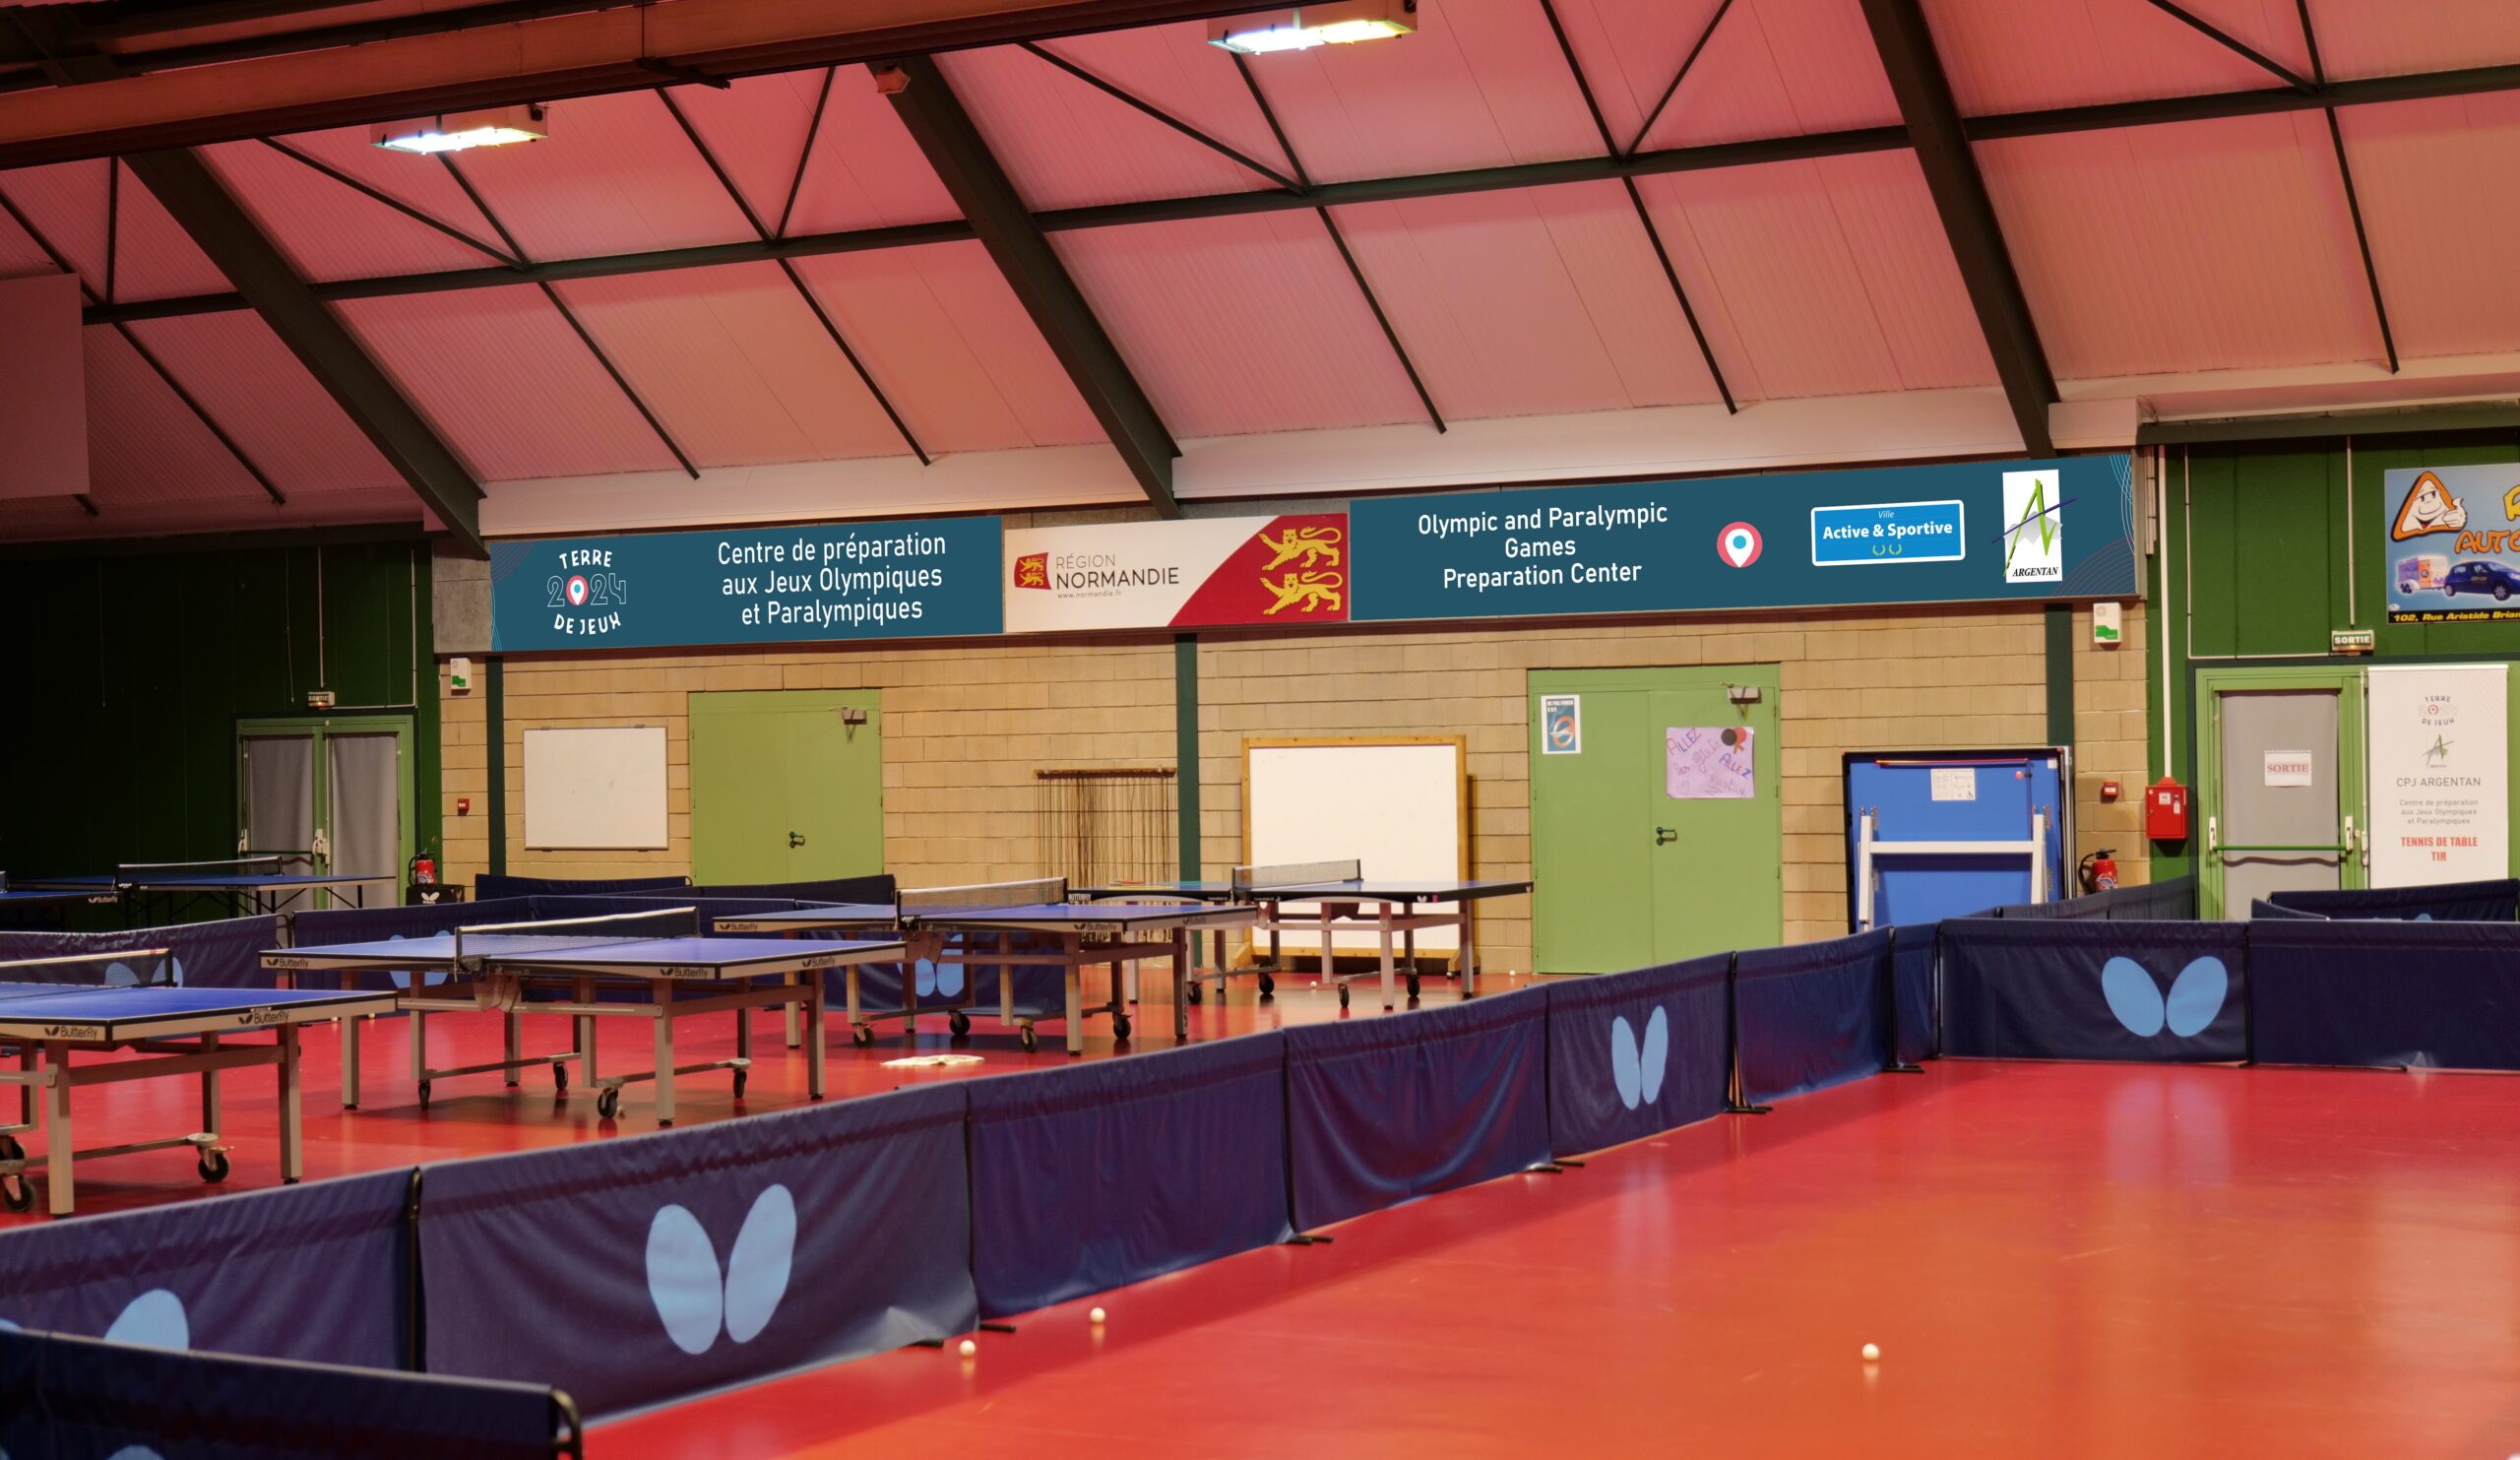 L'intérieur des tables de ping-pong Tennis de Table Table Kids